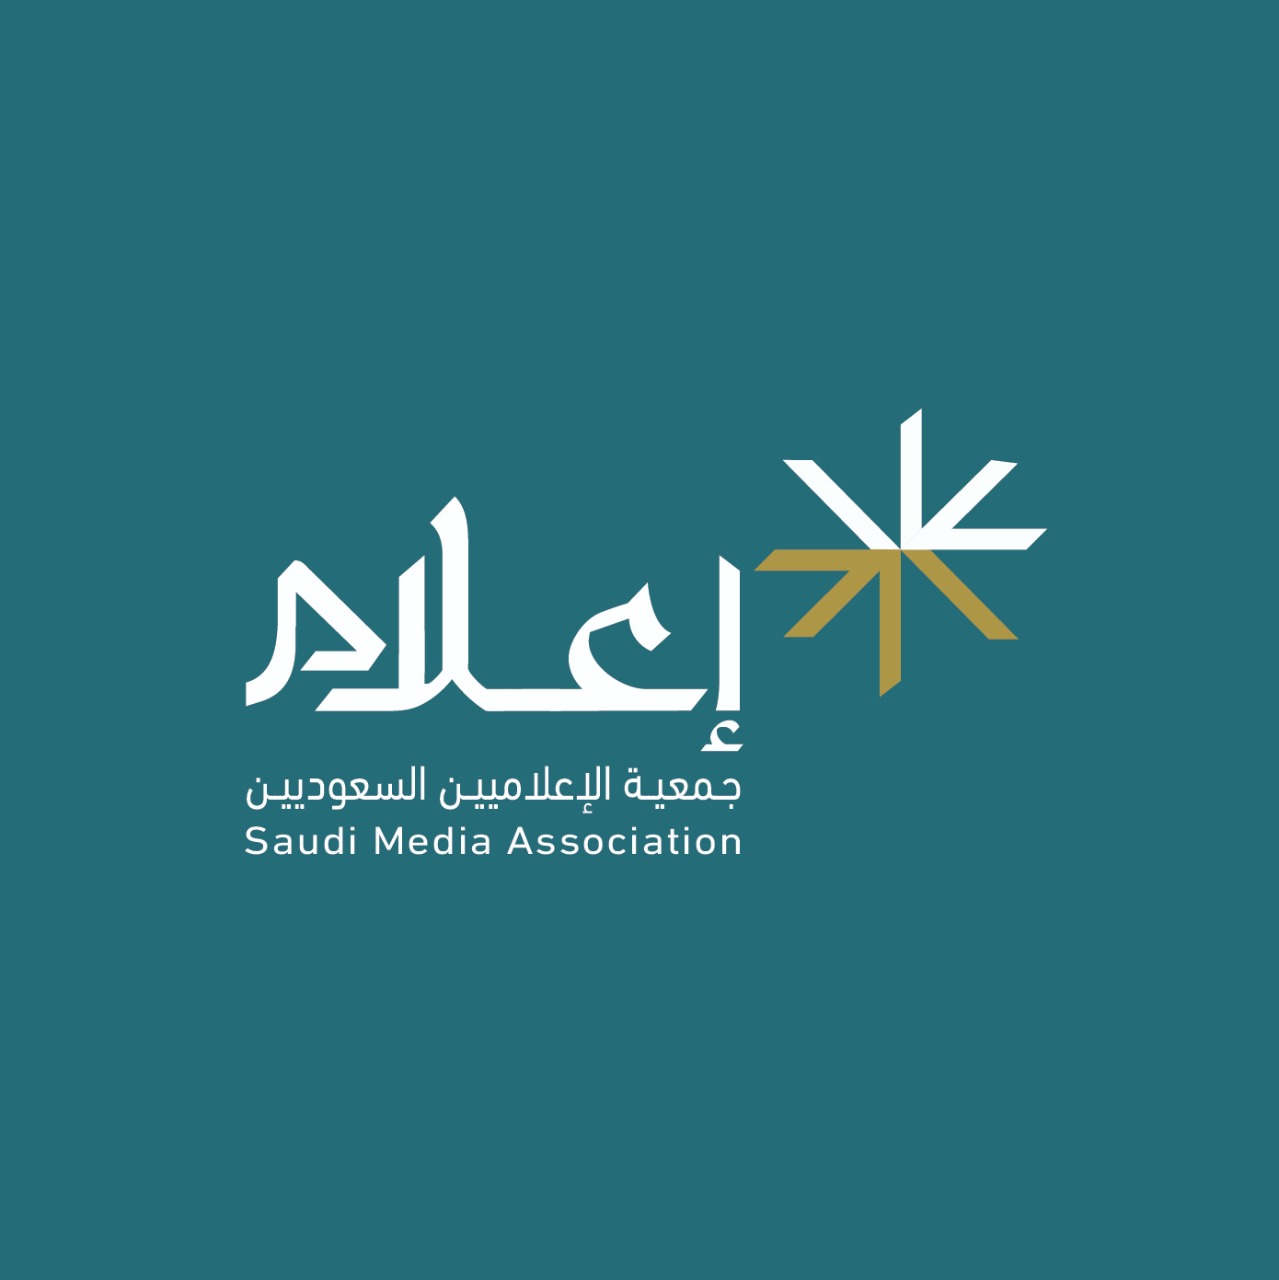 جمعية إعلام تطلق تطوير شعارها الجديد